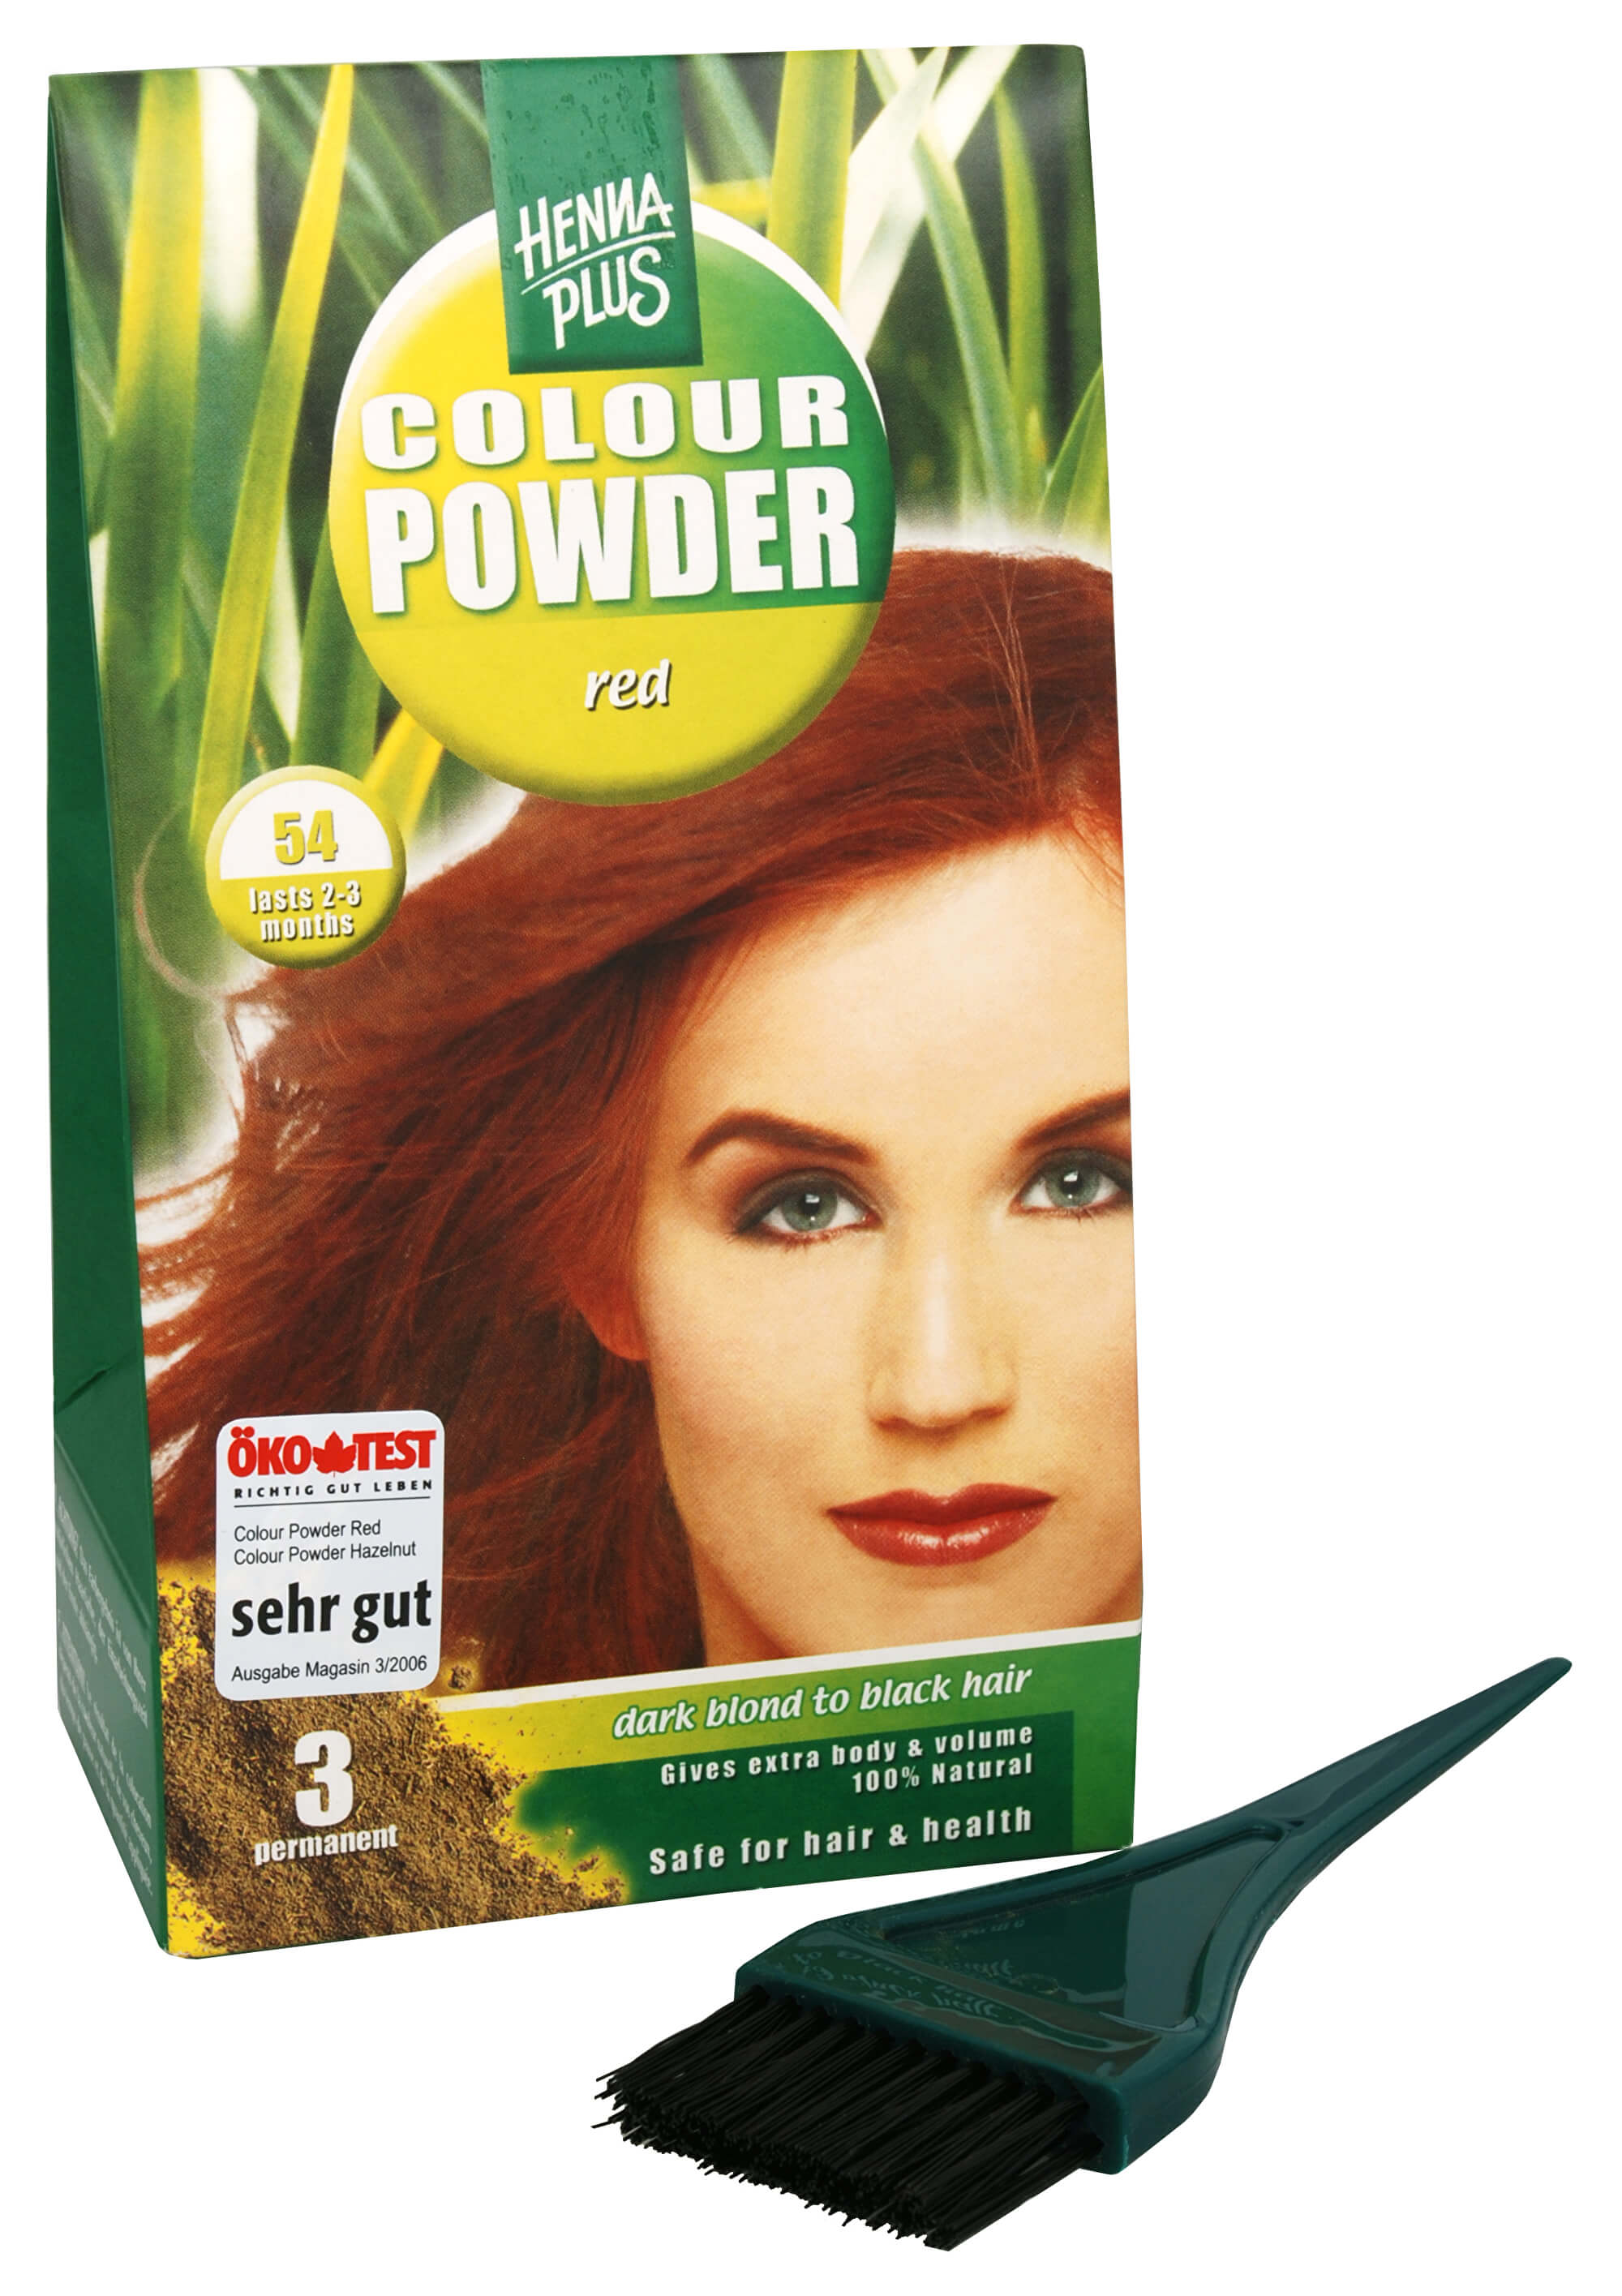 Zobrazit detail výrobku HennaPlus Přírodní prášková barva (Colour Powder) 100 g 56 Kaštanová